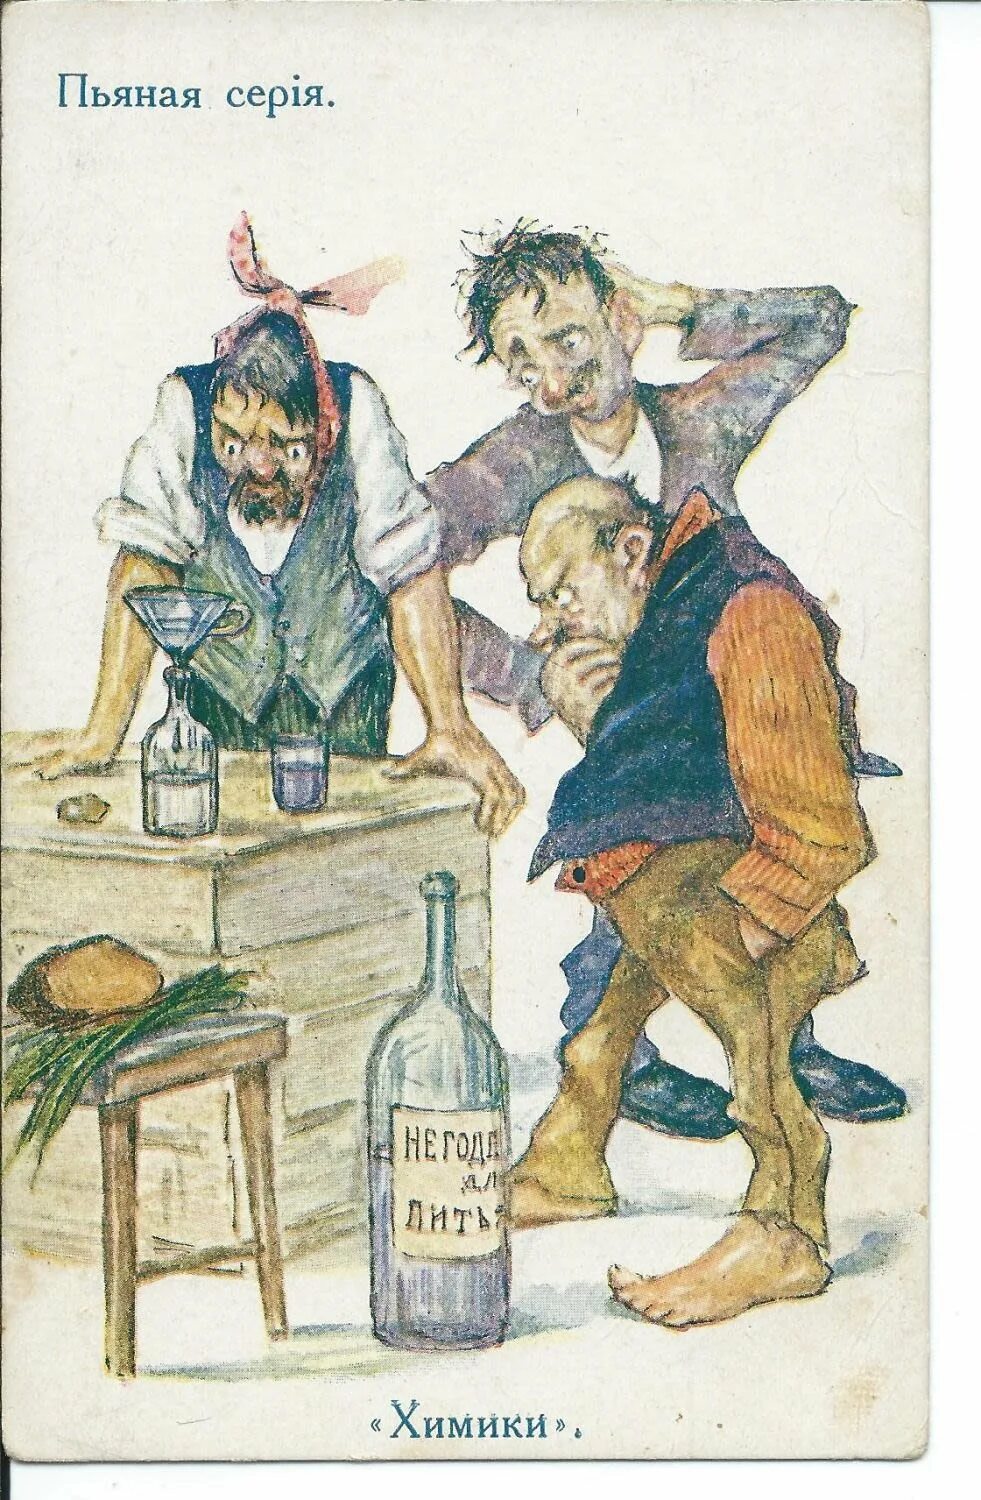 Пьяница дали. Алкоголик карикатура. Карикатура пьянство. Пьянство иллюстрация. Советские карикатуры пьянство.